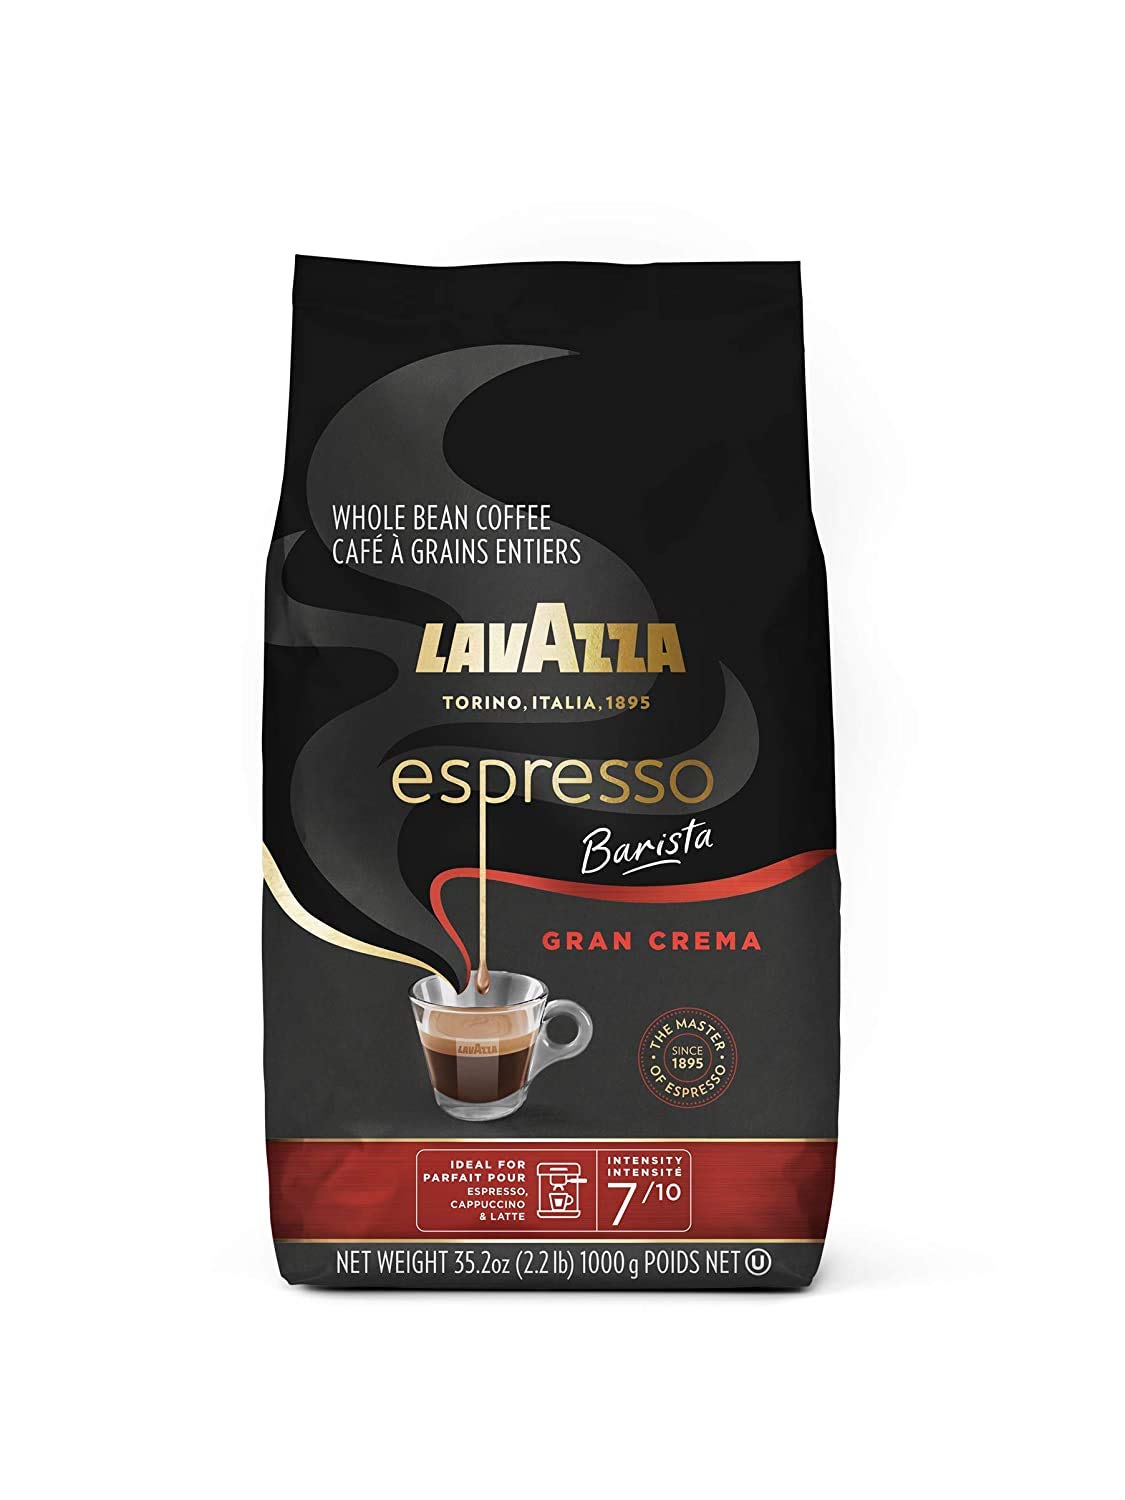 35.2-Oz Lavazza Espresso Barista Gran Crema Whole Bean Coffee (Medium Roast) S/S Amazon $13.39 5% $11.48 15% w 25% coupon YMMV